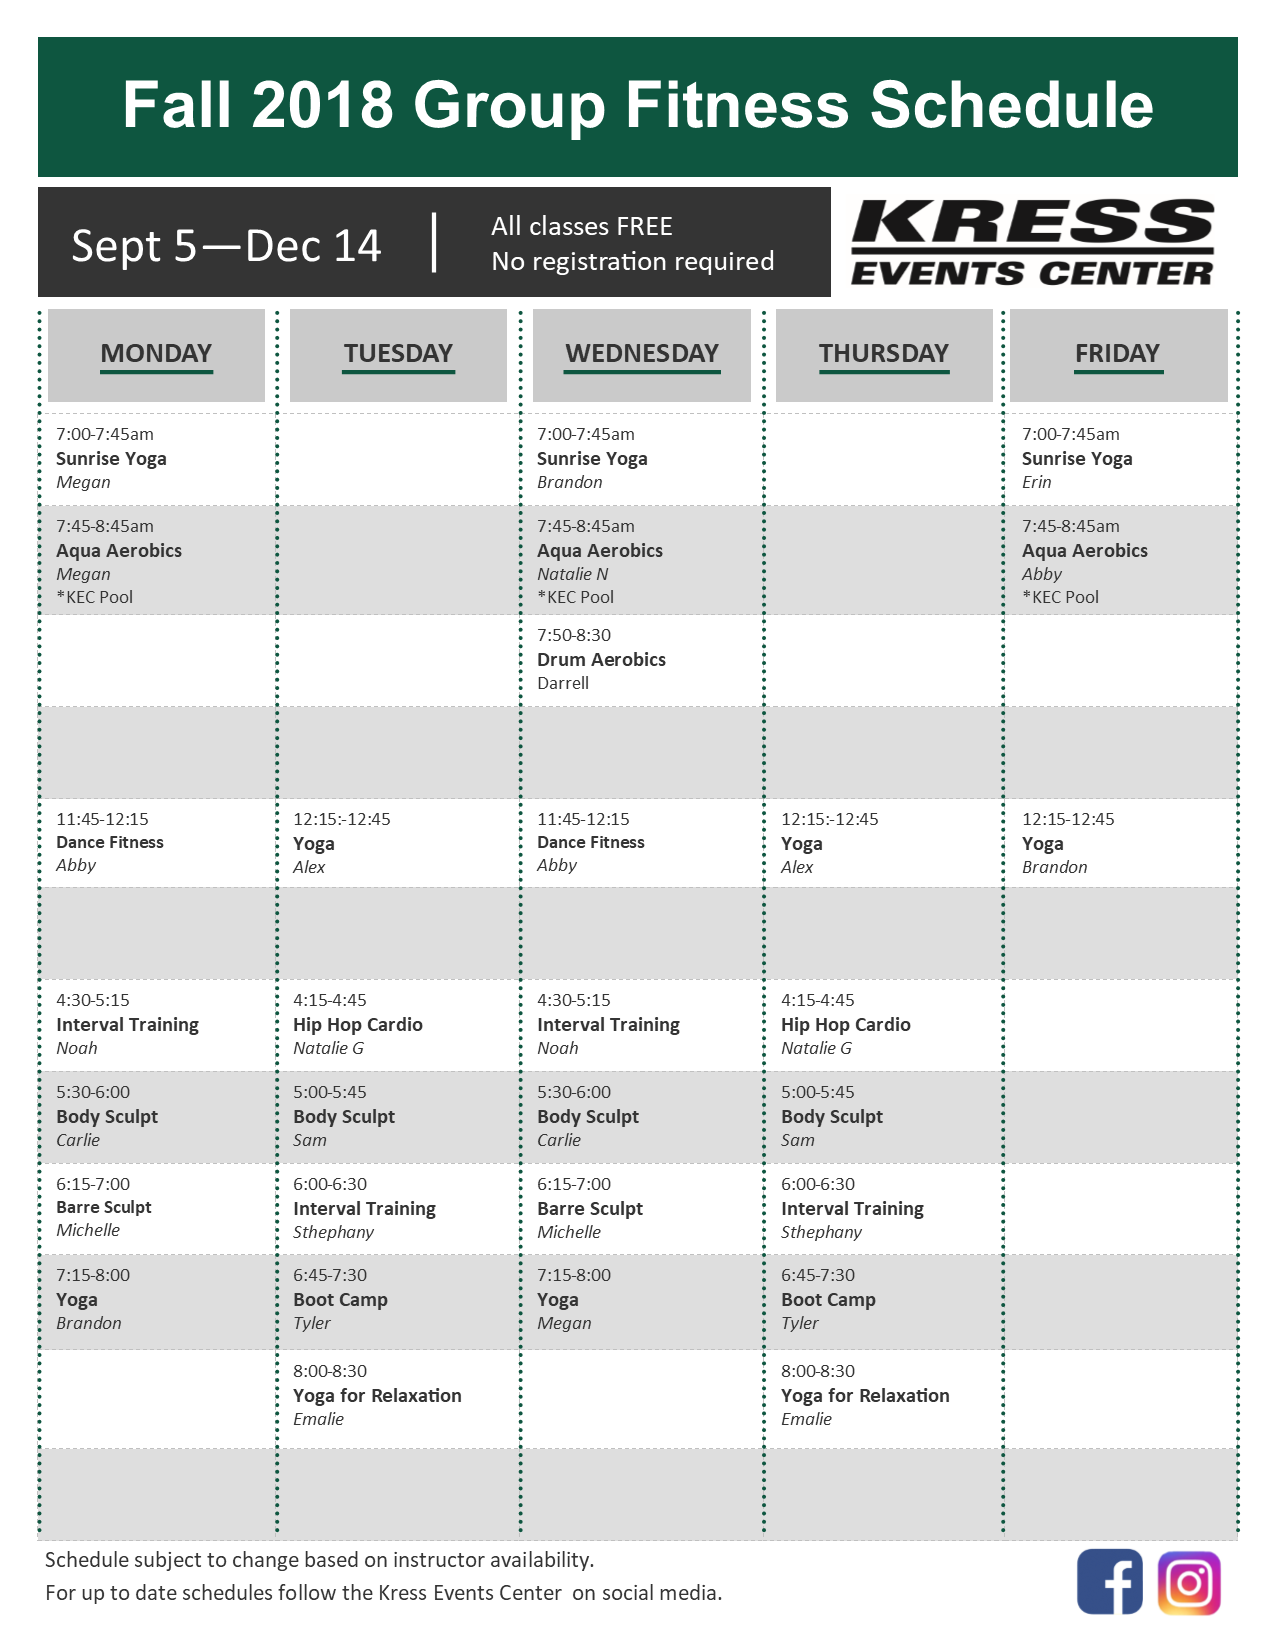 kress events center - uw-green bay